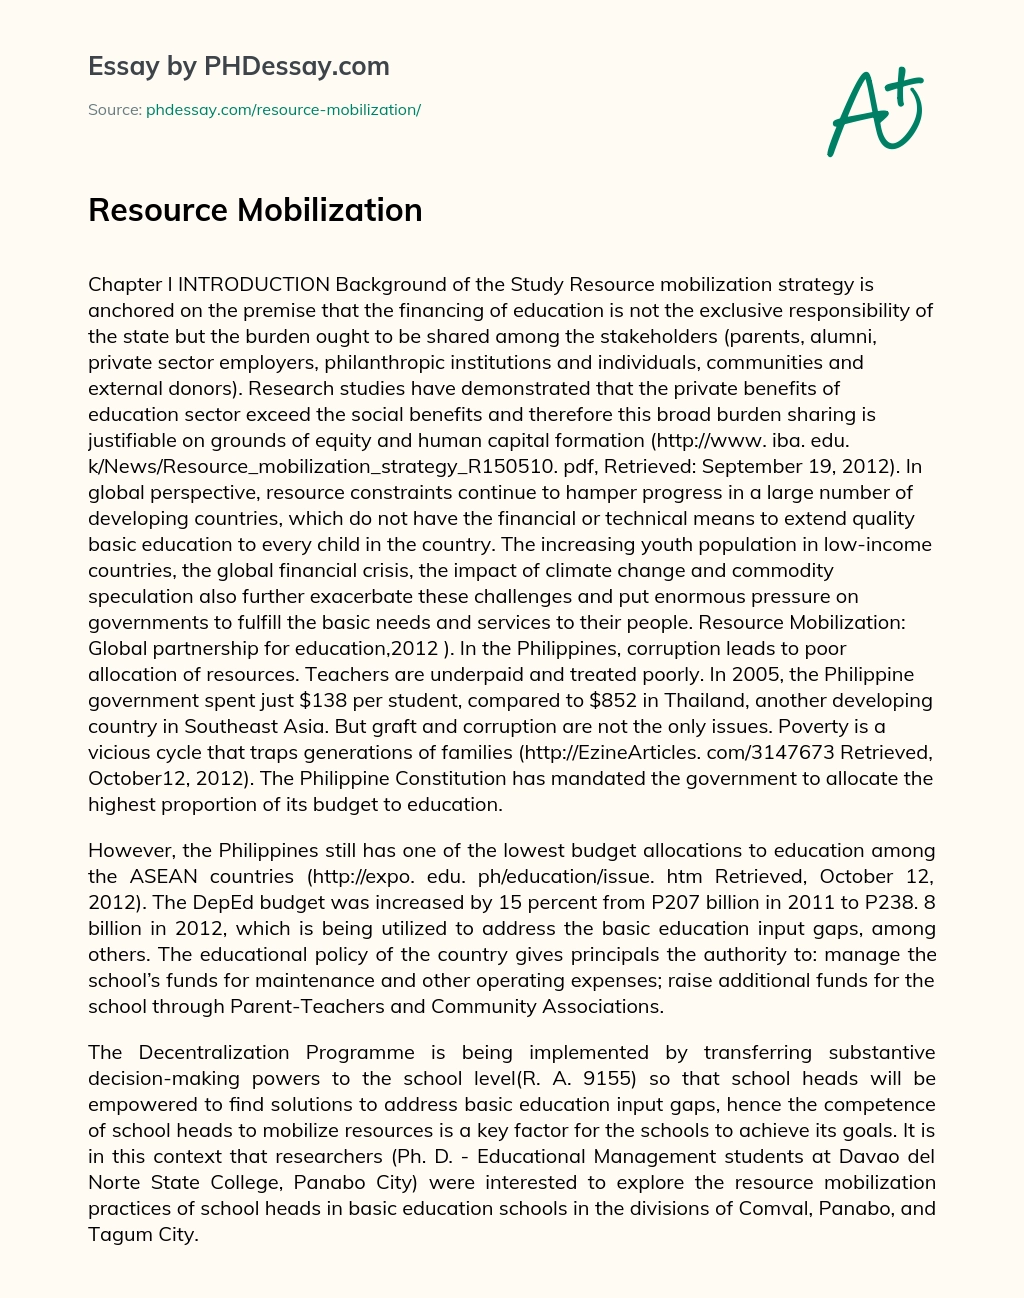 Resource Mobilization essay